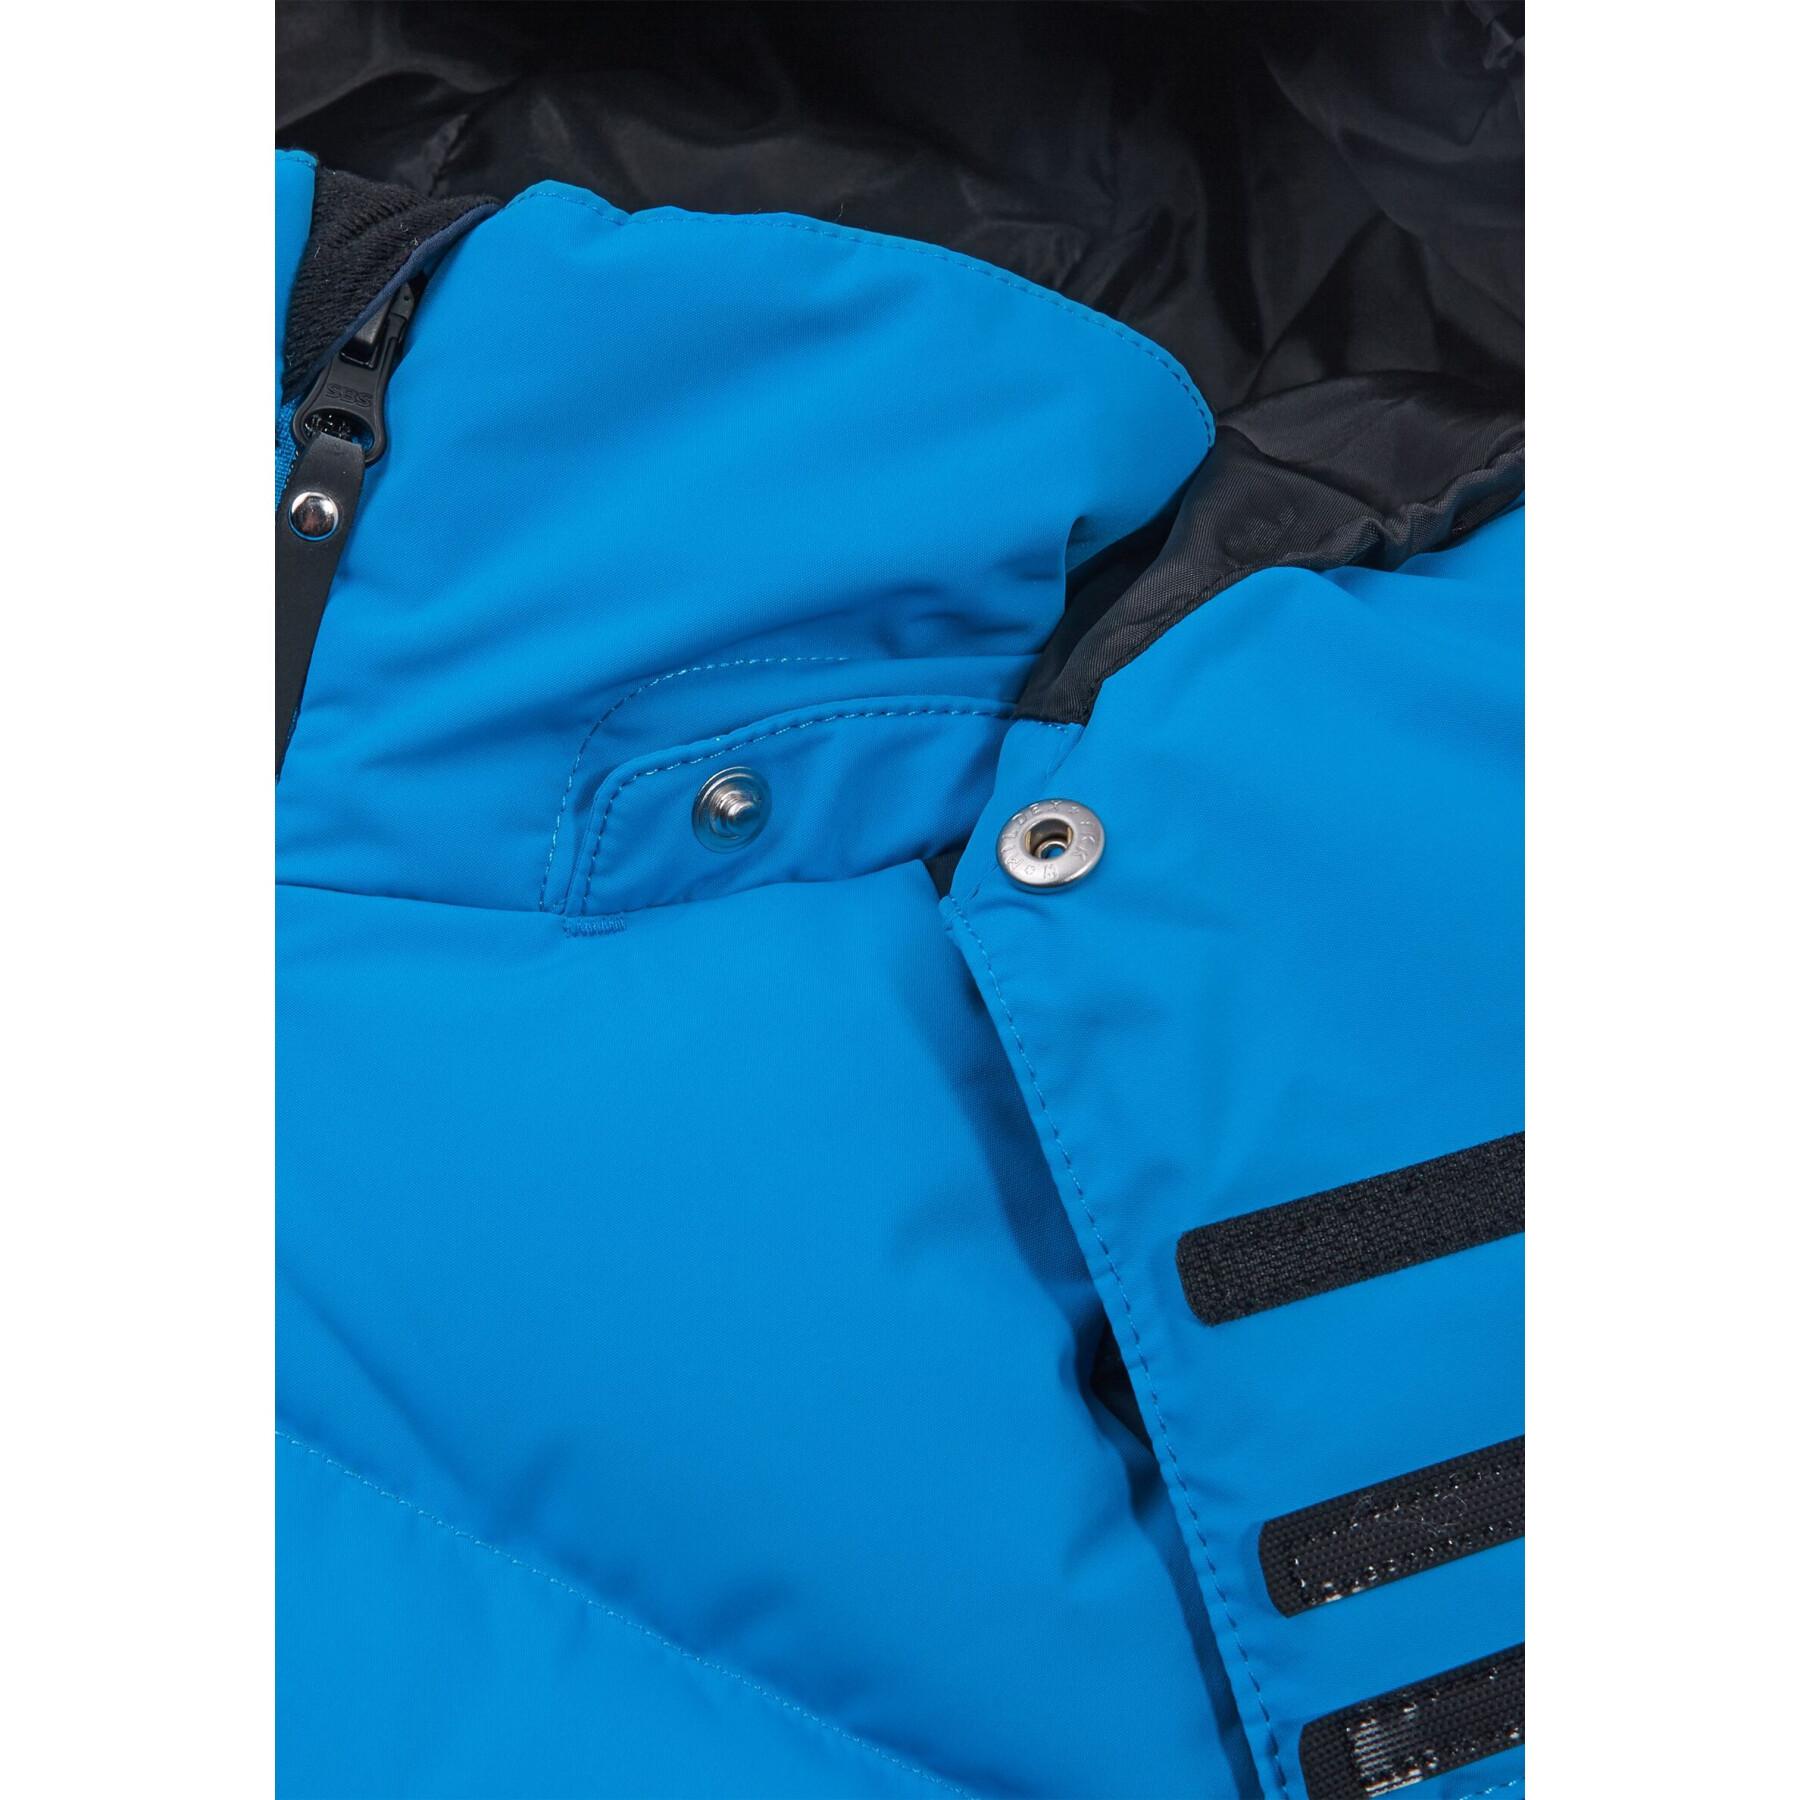 Children's ski jacket Reima Kuosku